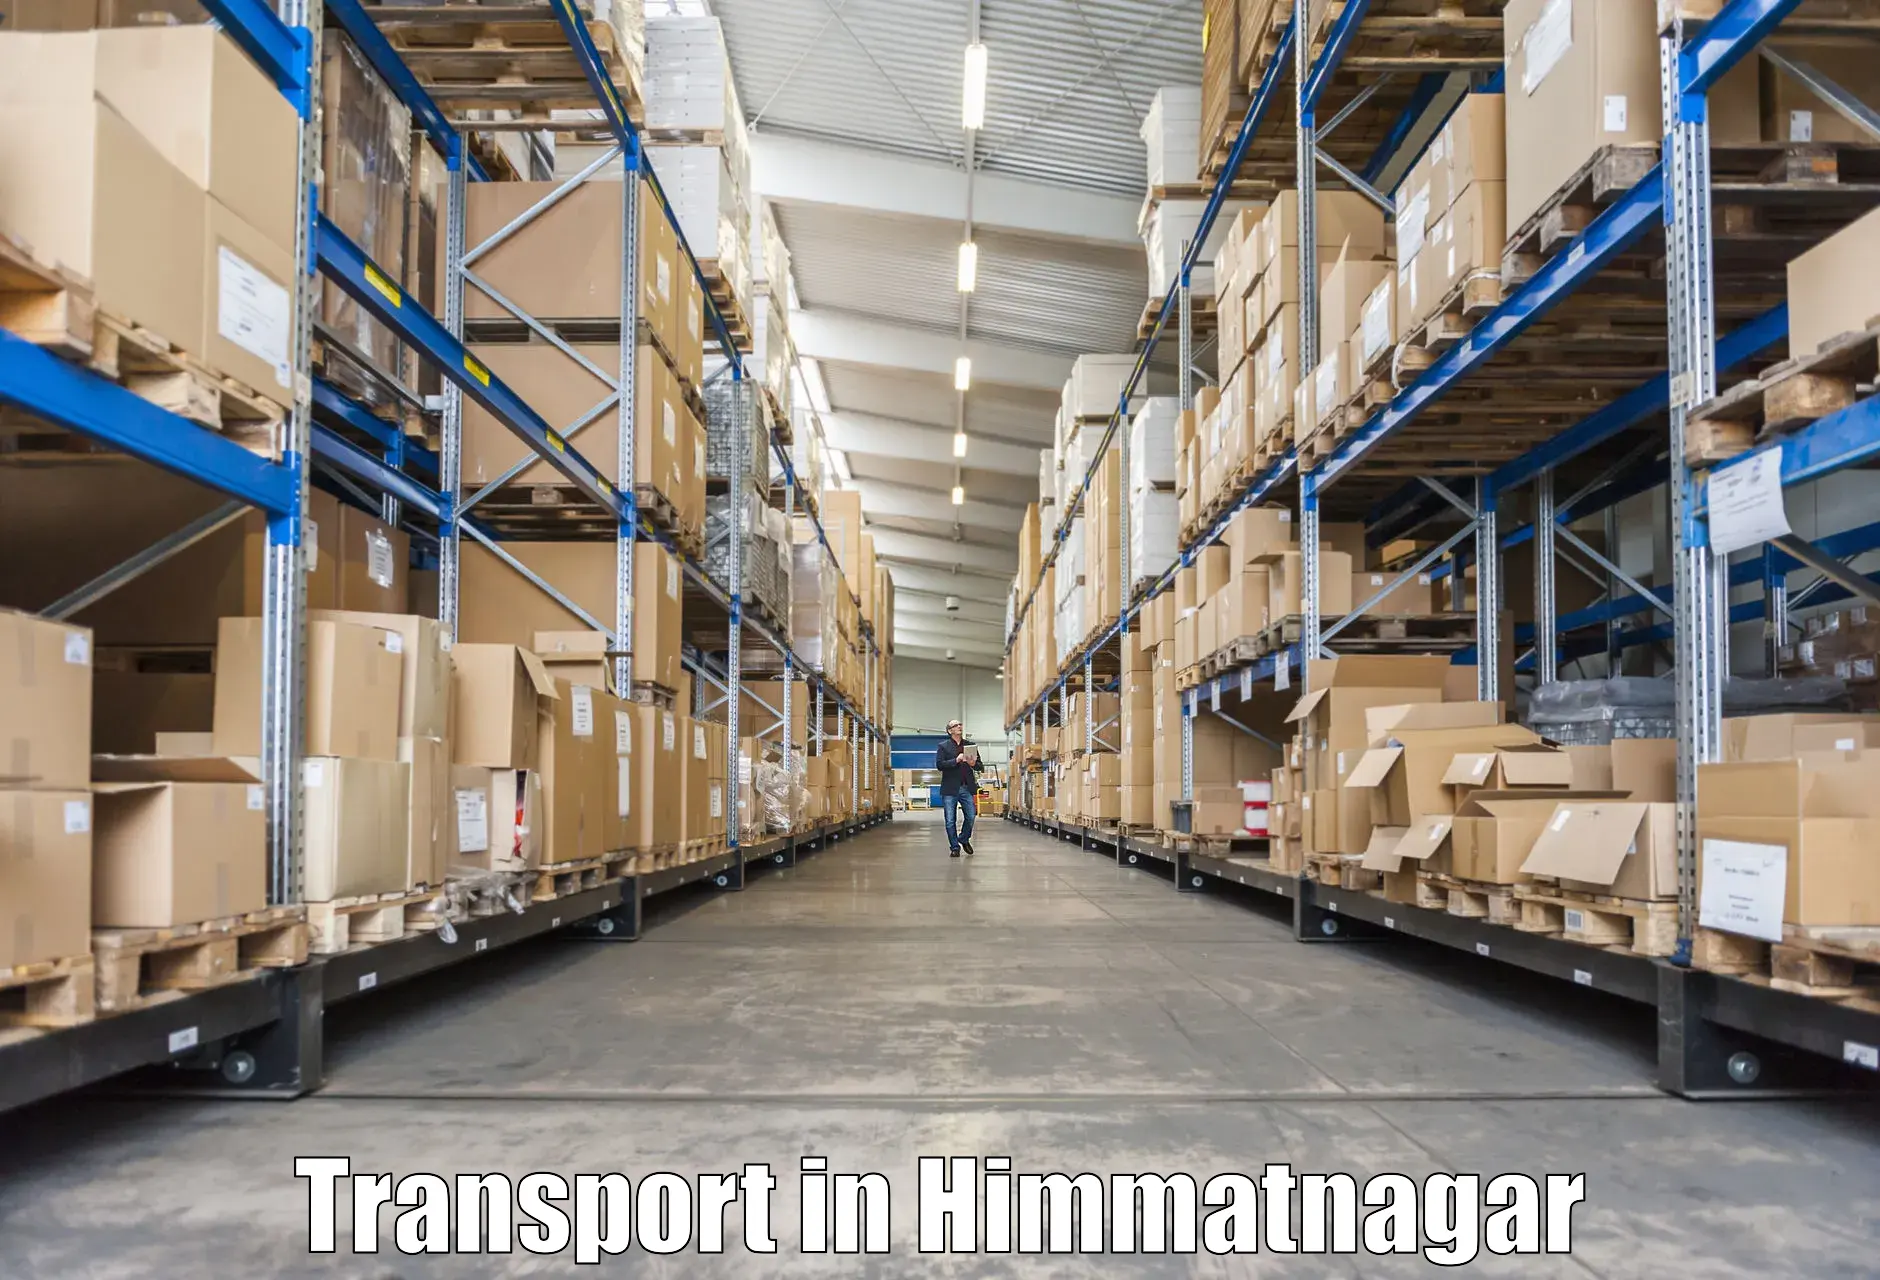 Daily transport service in Himmatnagar